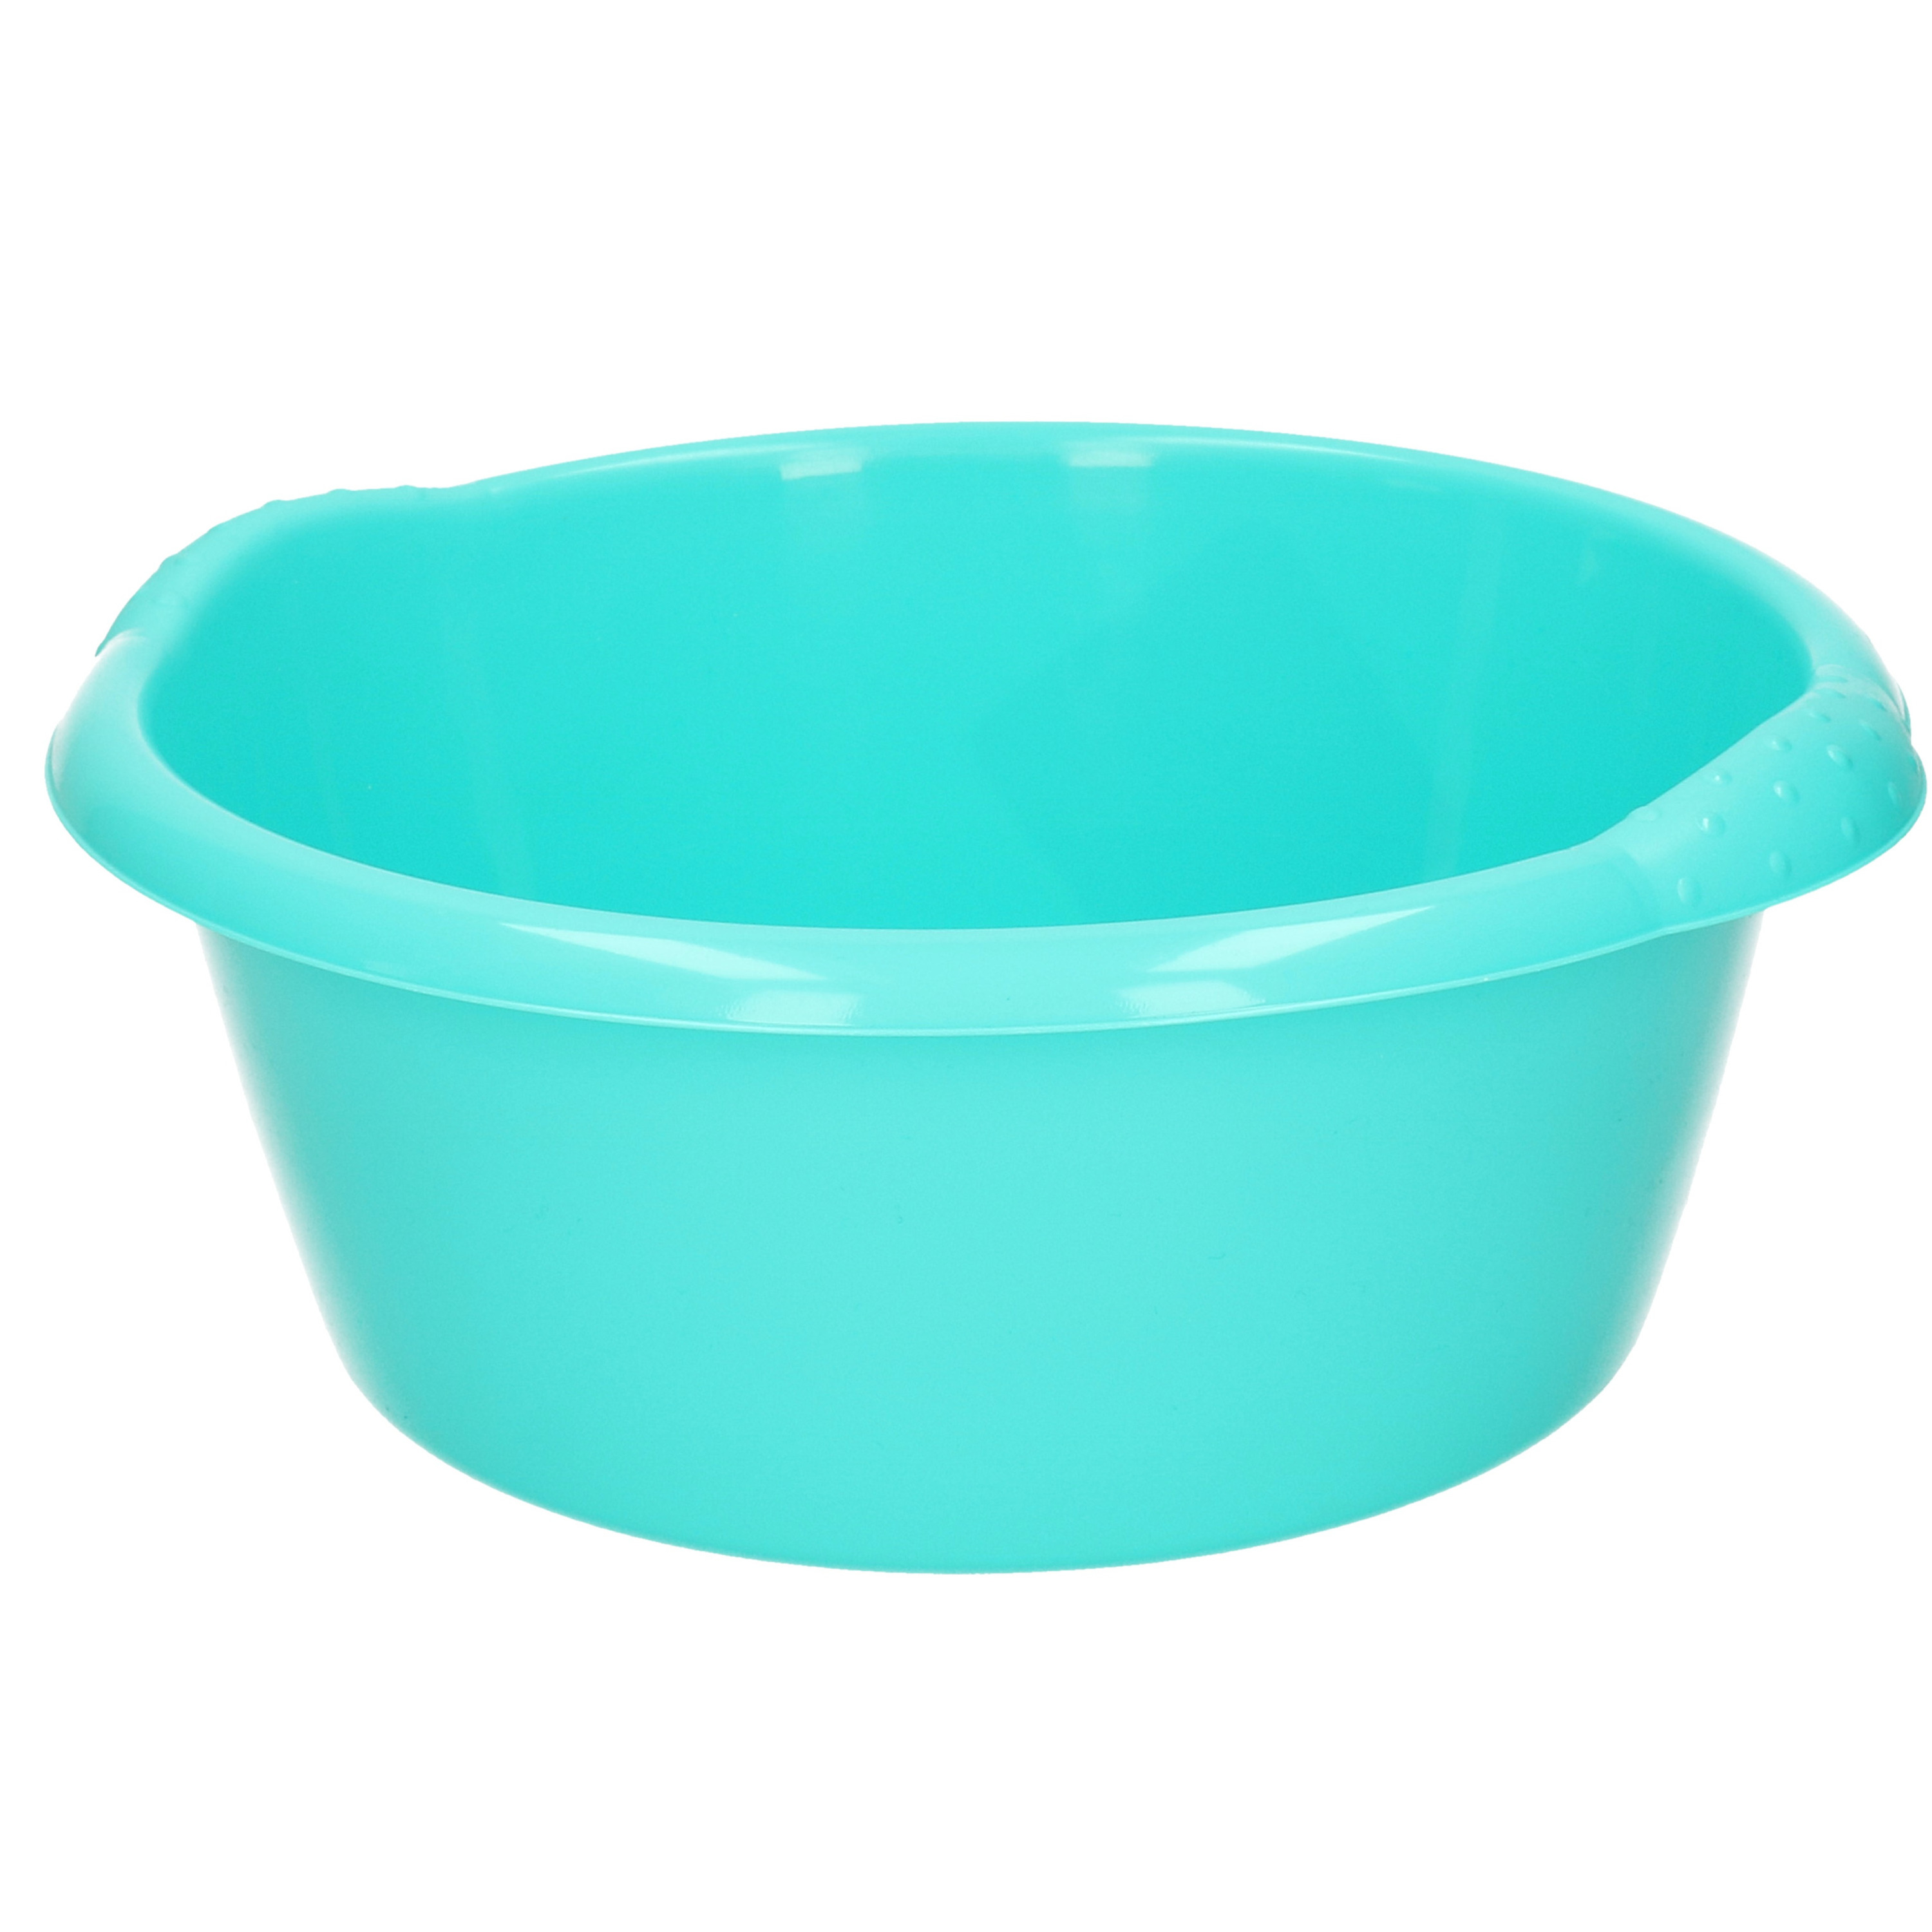 Ronde afwasteil-afwasbak turquoise blauw 3 liter 25 x 10,5 cm